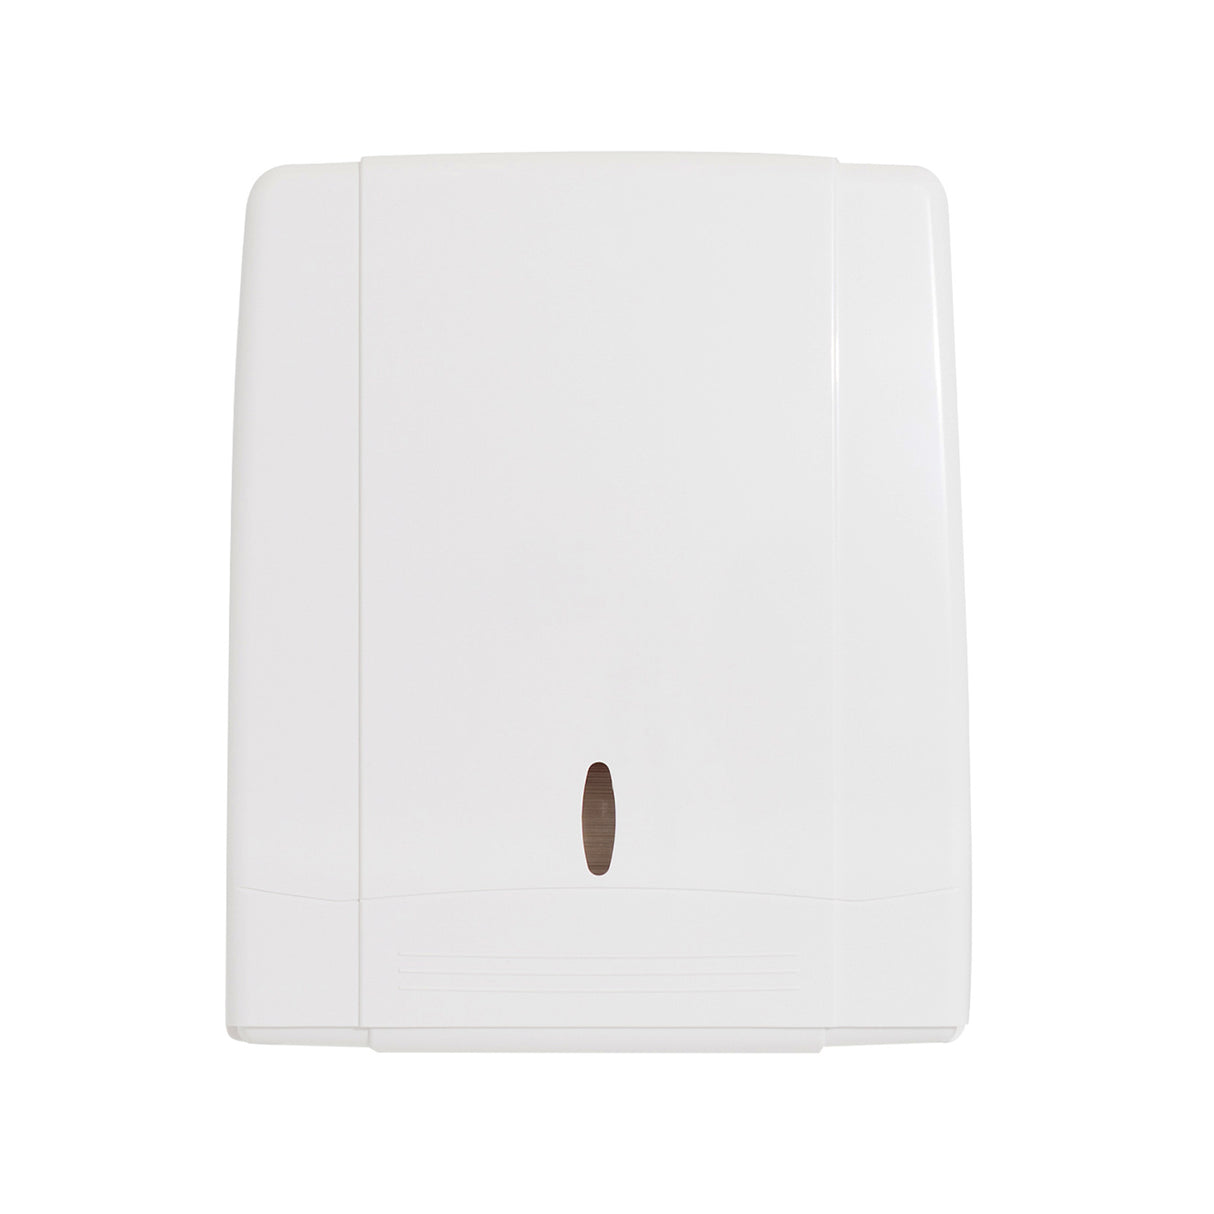 ET570 NuTech Paper Towel Dispenser - 1 per carton